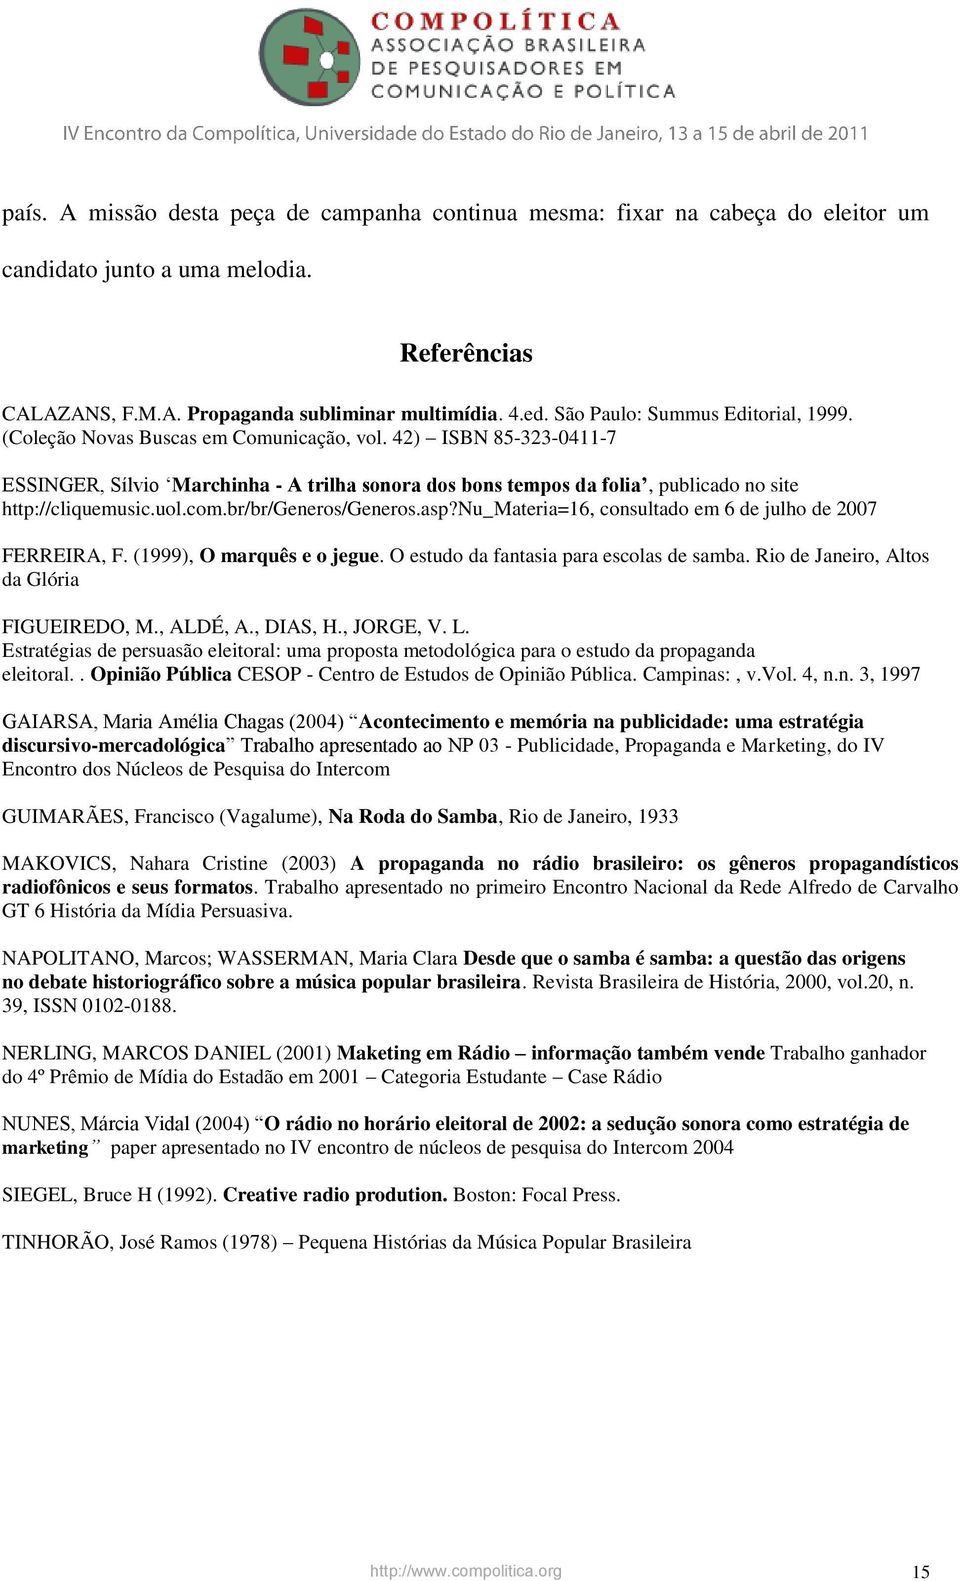 42) ISBN 85-323-0411-7 ESSINGER, Sílvio Marchinha - A trilha sonora dos bons tempos da folia, publicado no site http://cliquemusic.uol.com.br/br/generos/generos.asp?